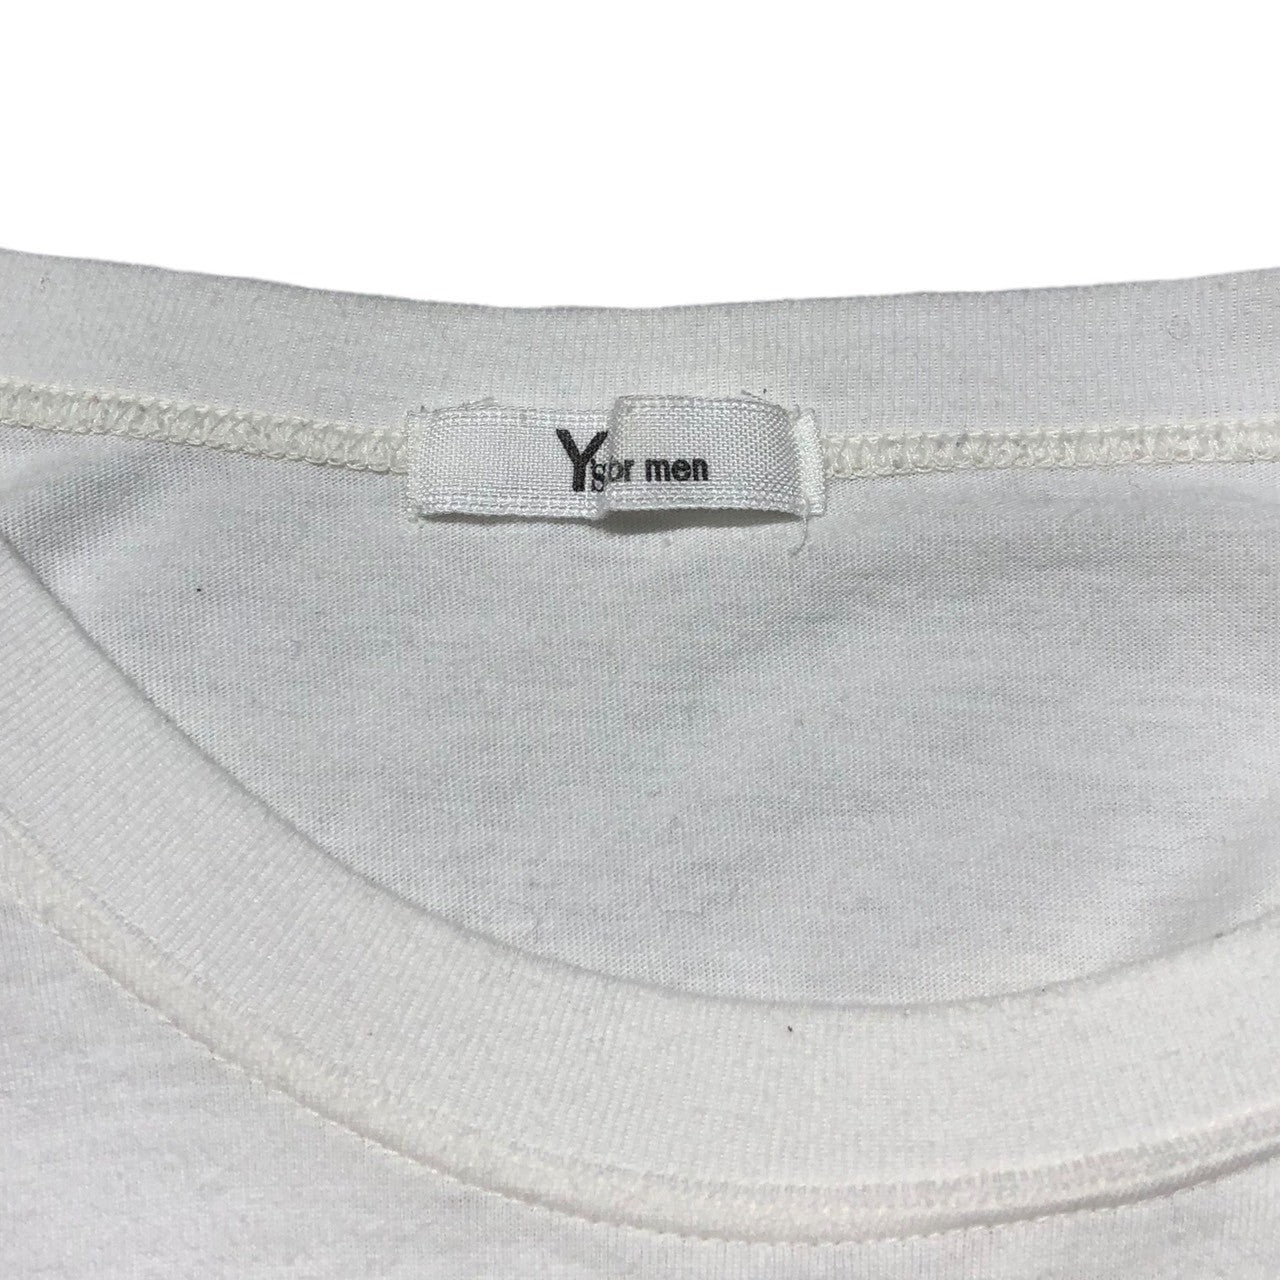 Y's for men(ワイズフォーメン) 90's Vintage one point logo long sleeve T-shirt ヴィンテージ ワンポイントロゴ ロングスリーブ Tシャツ 90年代 MT-T05-001 表記なし(FREE) ホワイト×ブラック